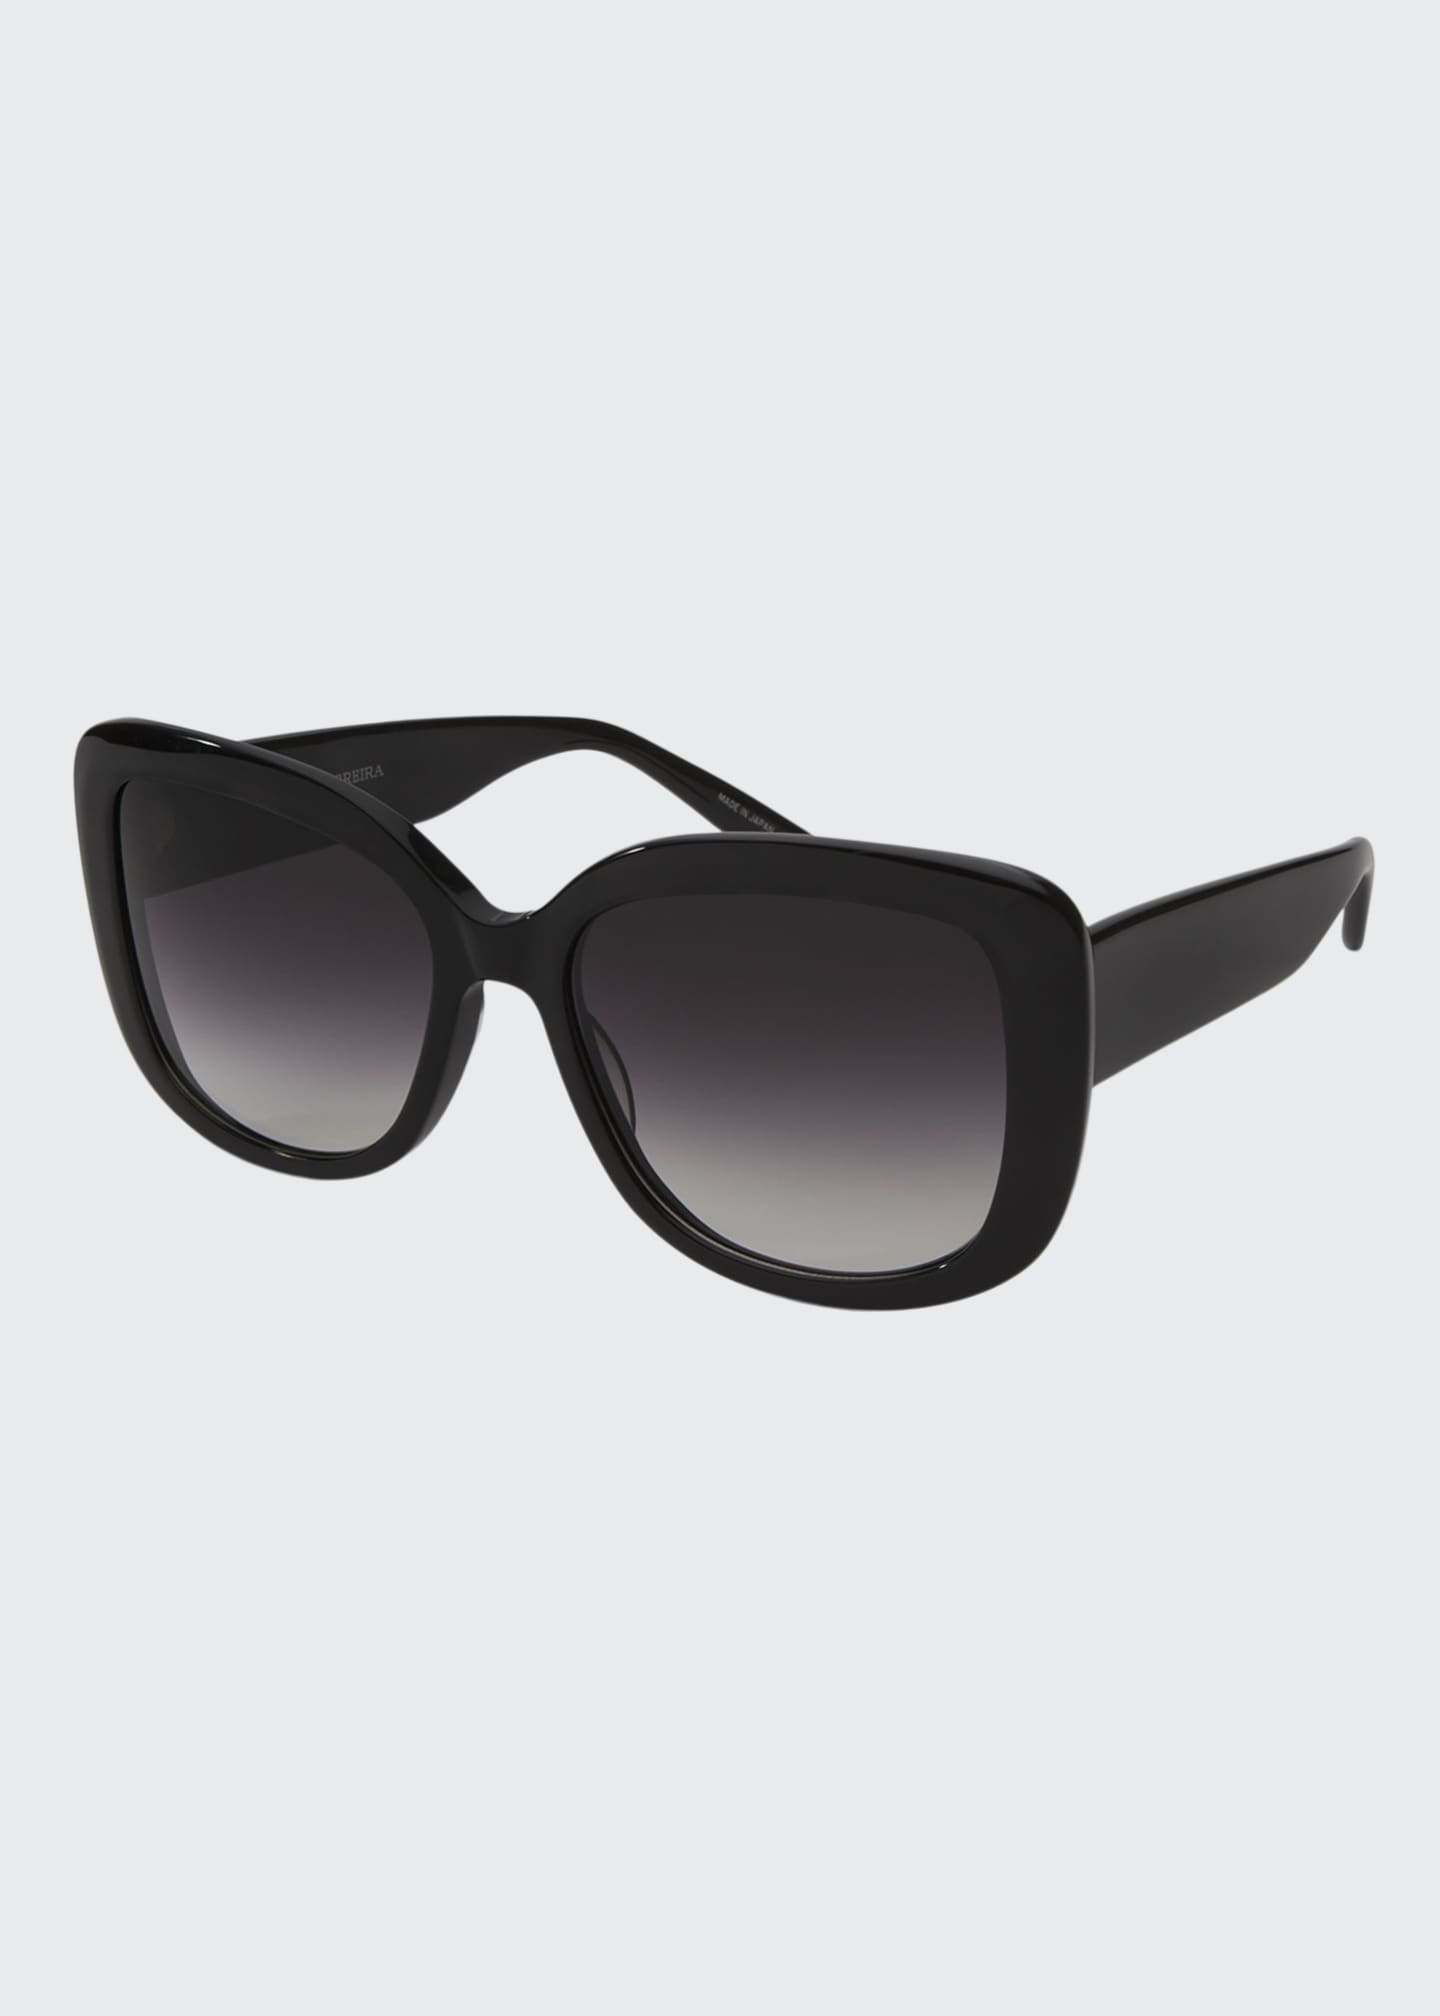 Barton Perreira Choupette Oversized Square Acetate Sunglasses, Black ...